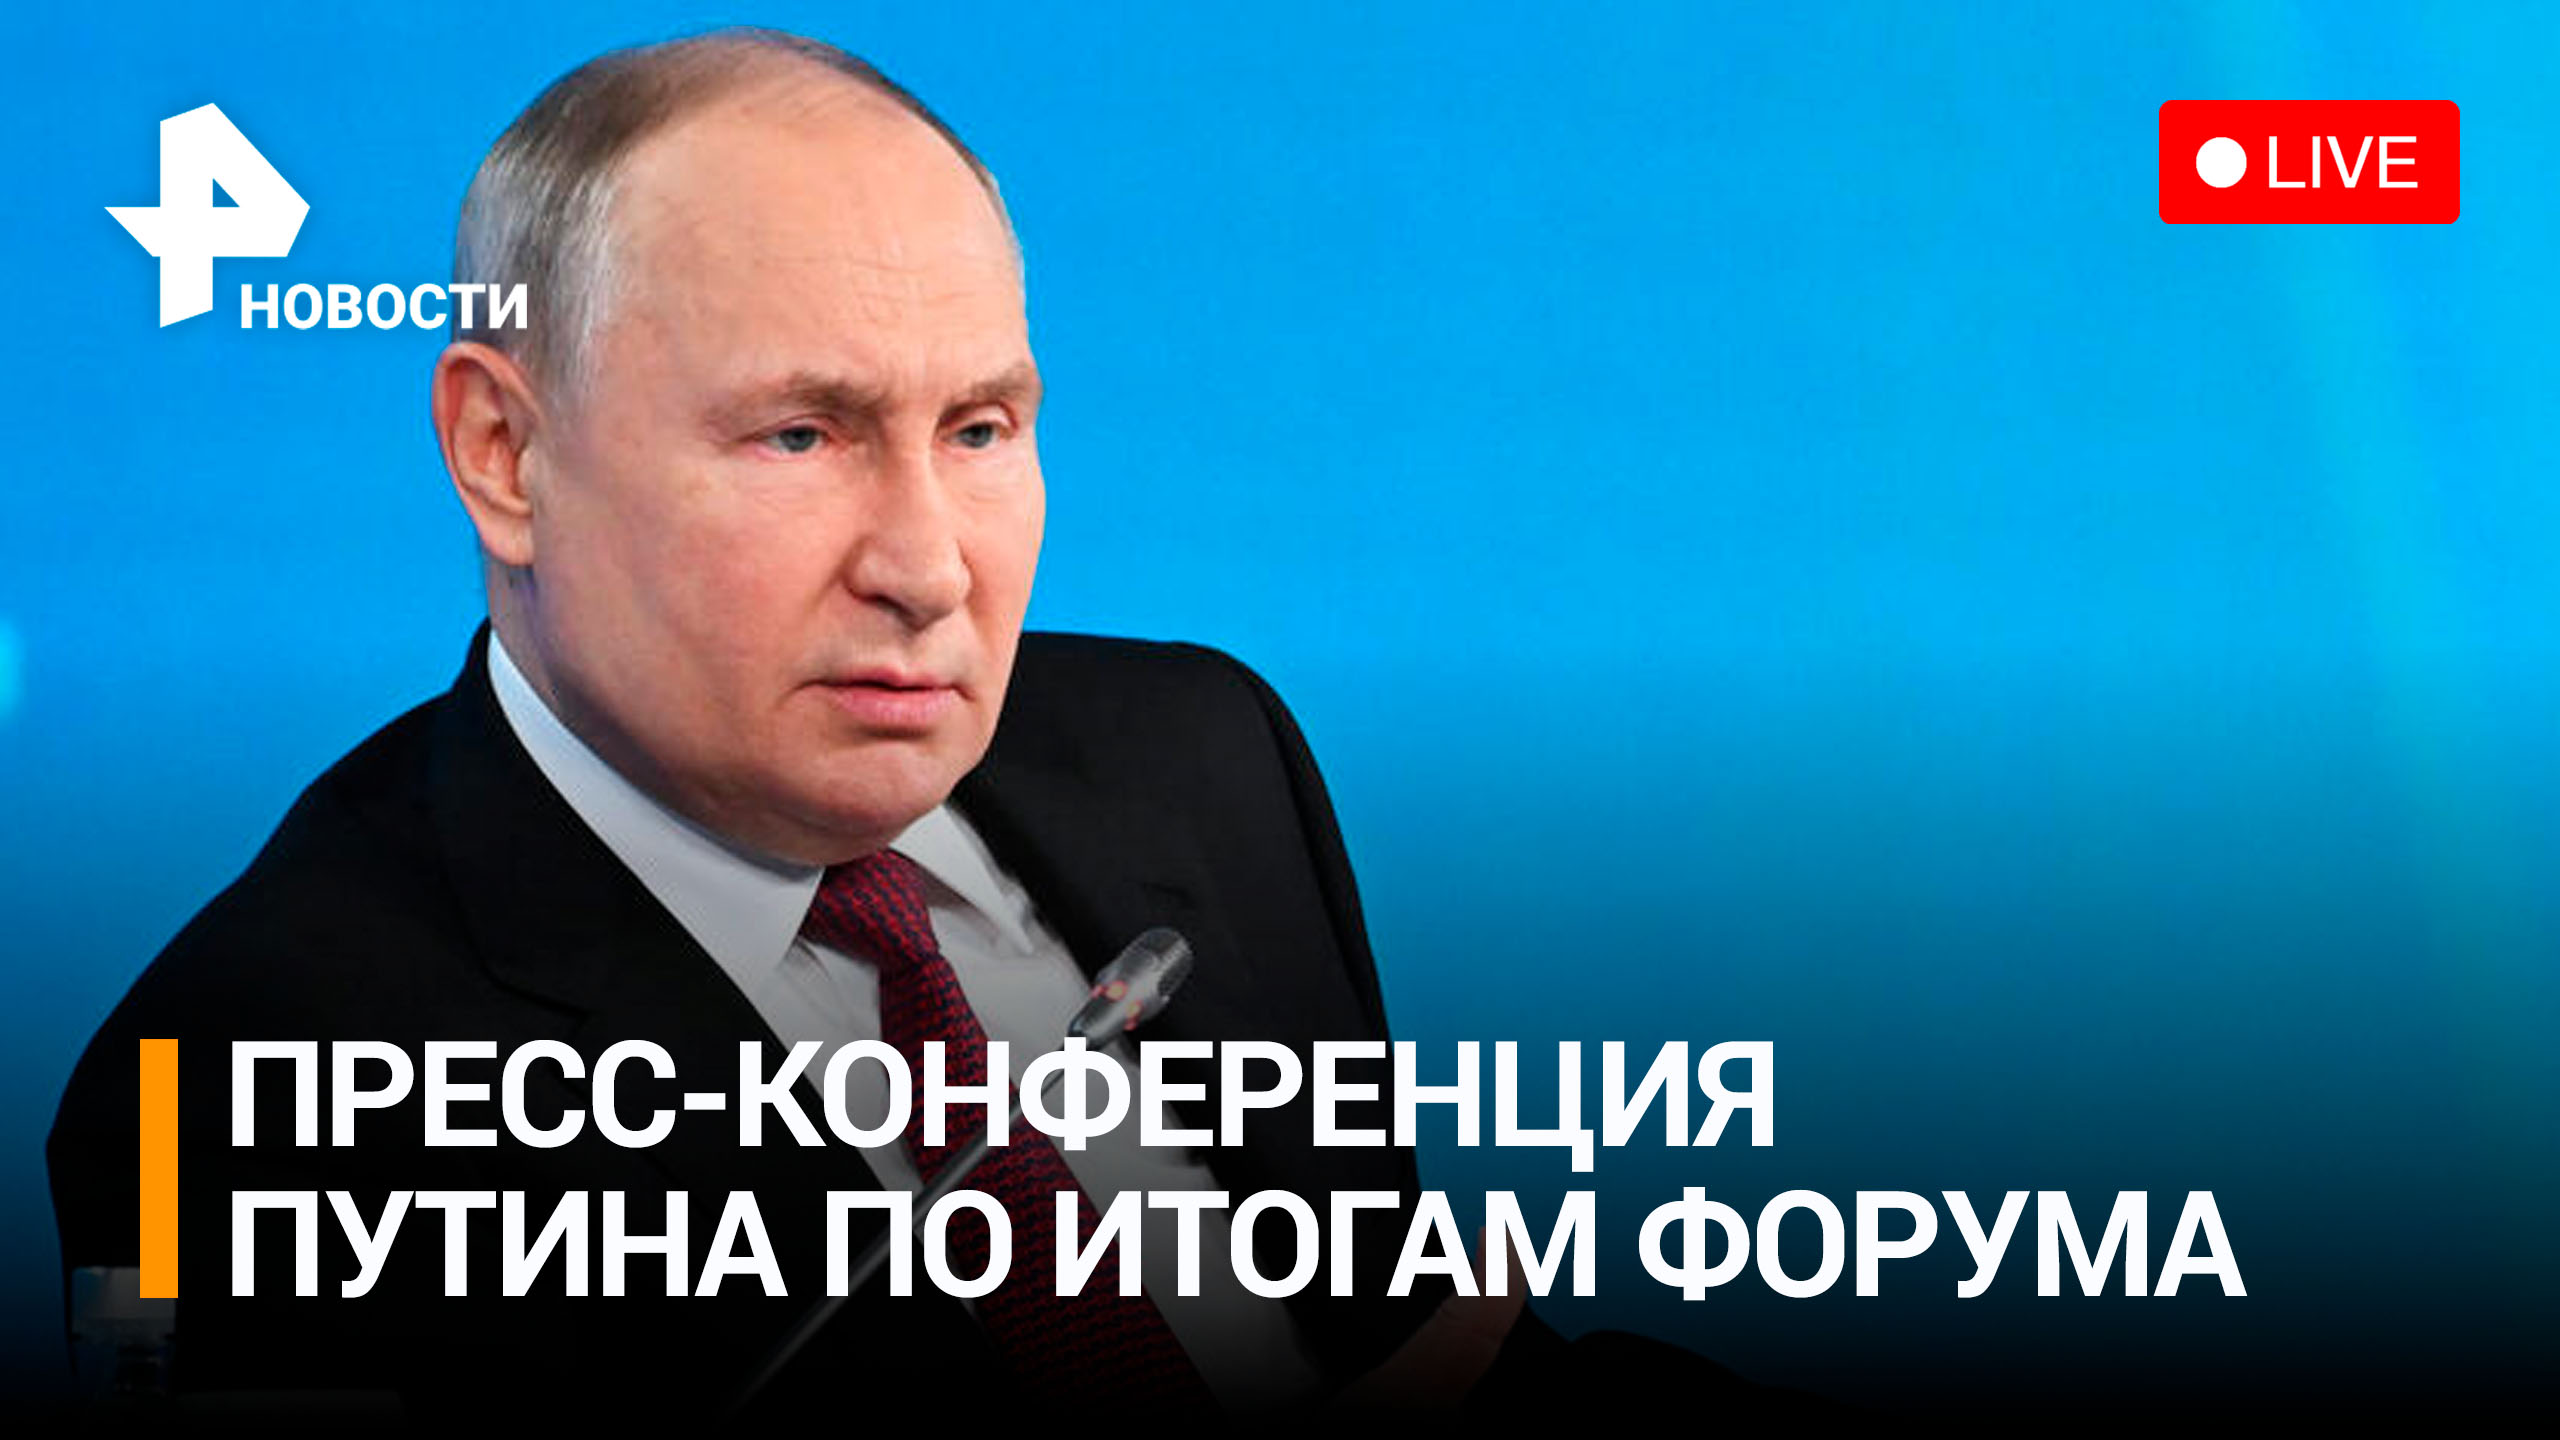 Итоги форума "Один пояс - один путь": пресс-конференция Владимира Путина. Прямая трансляция